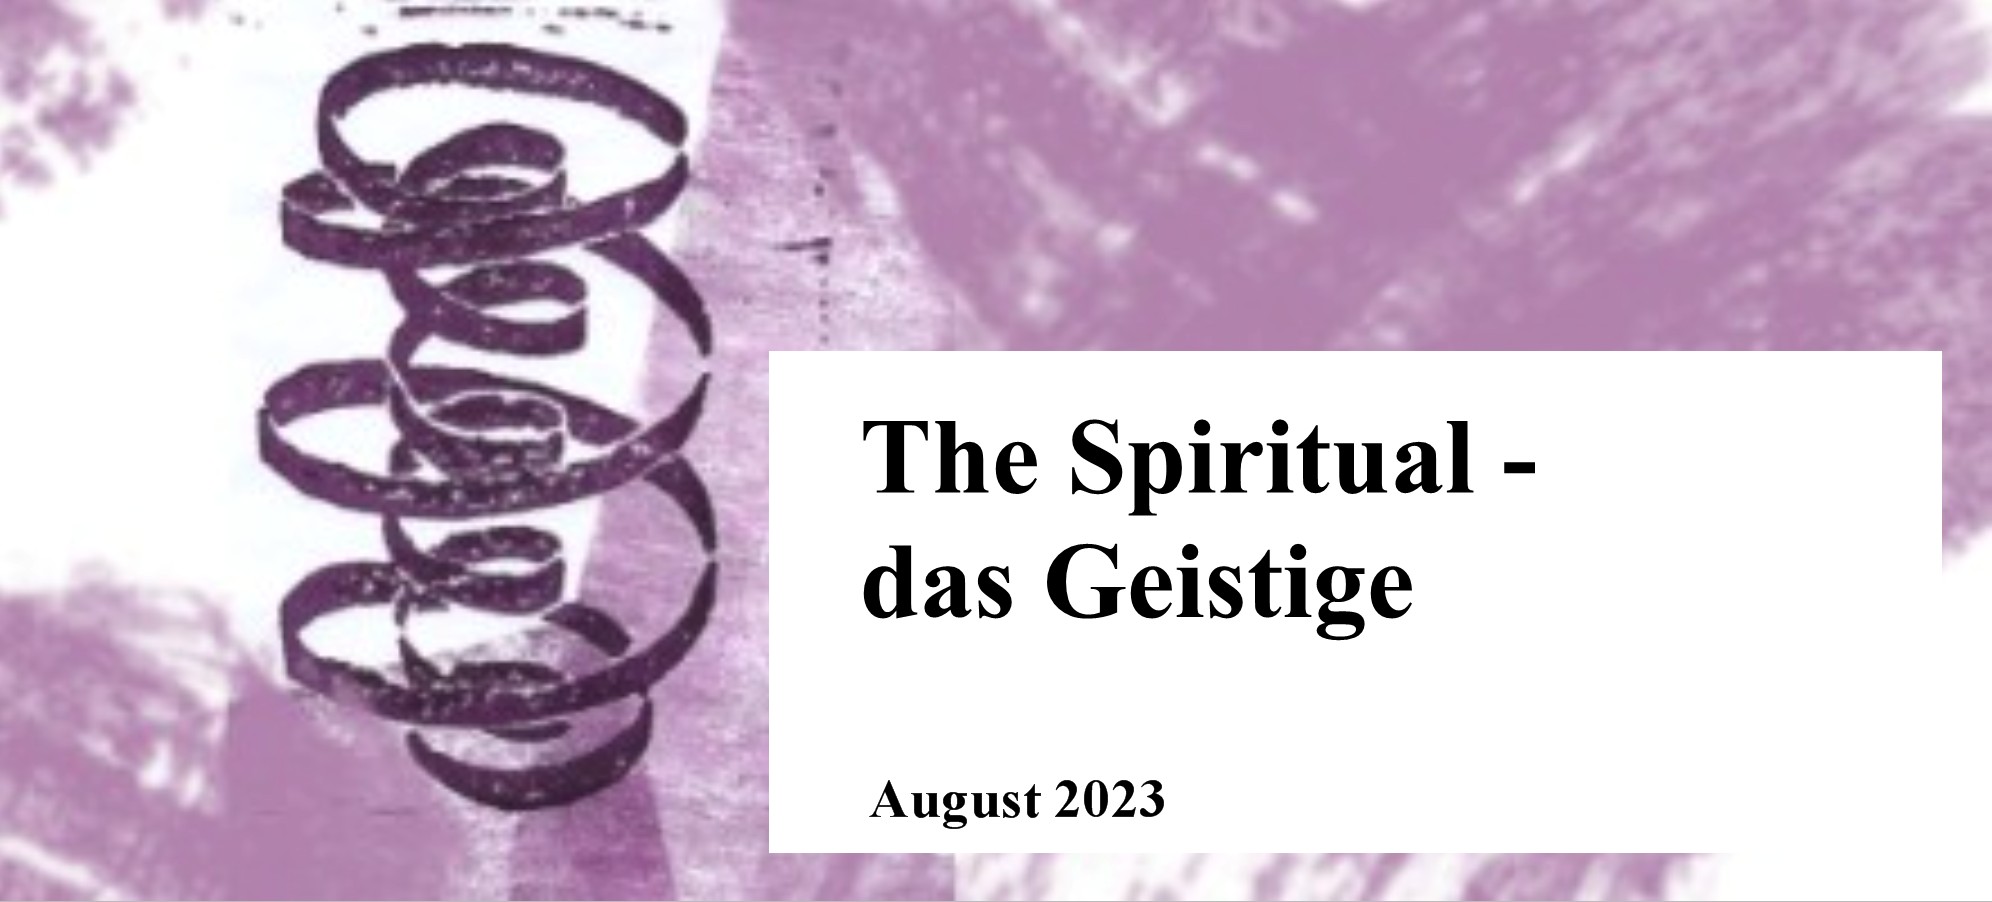 The Spiritual – das Geistige